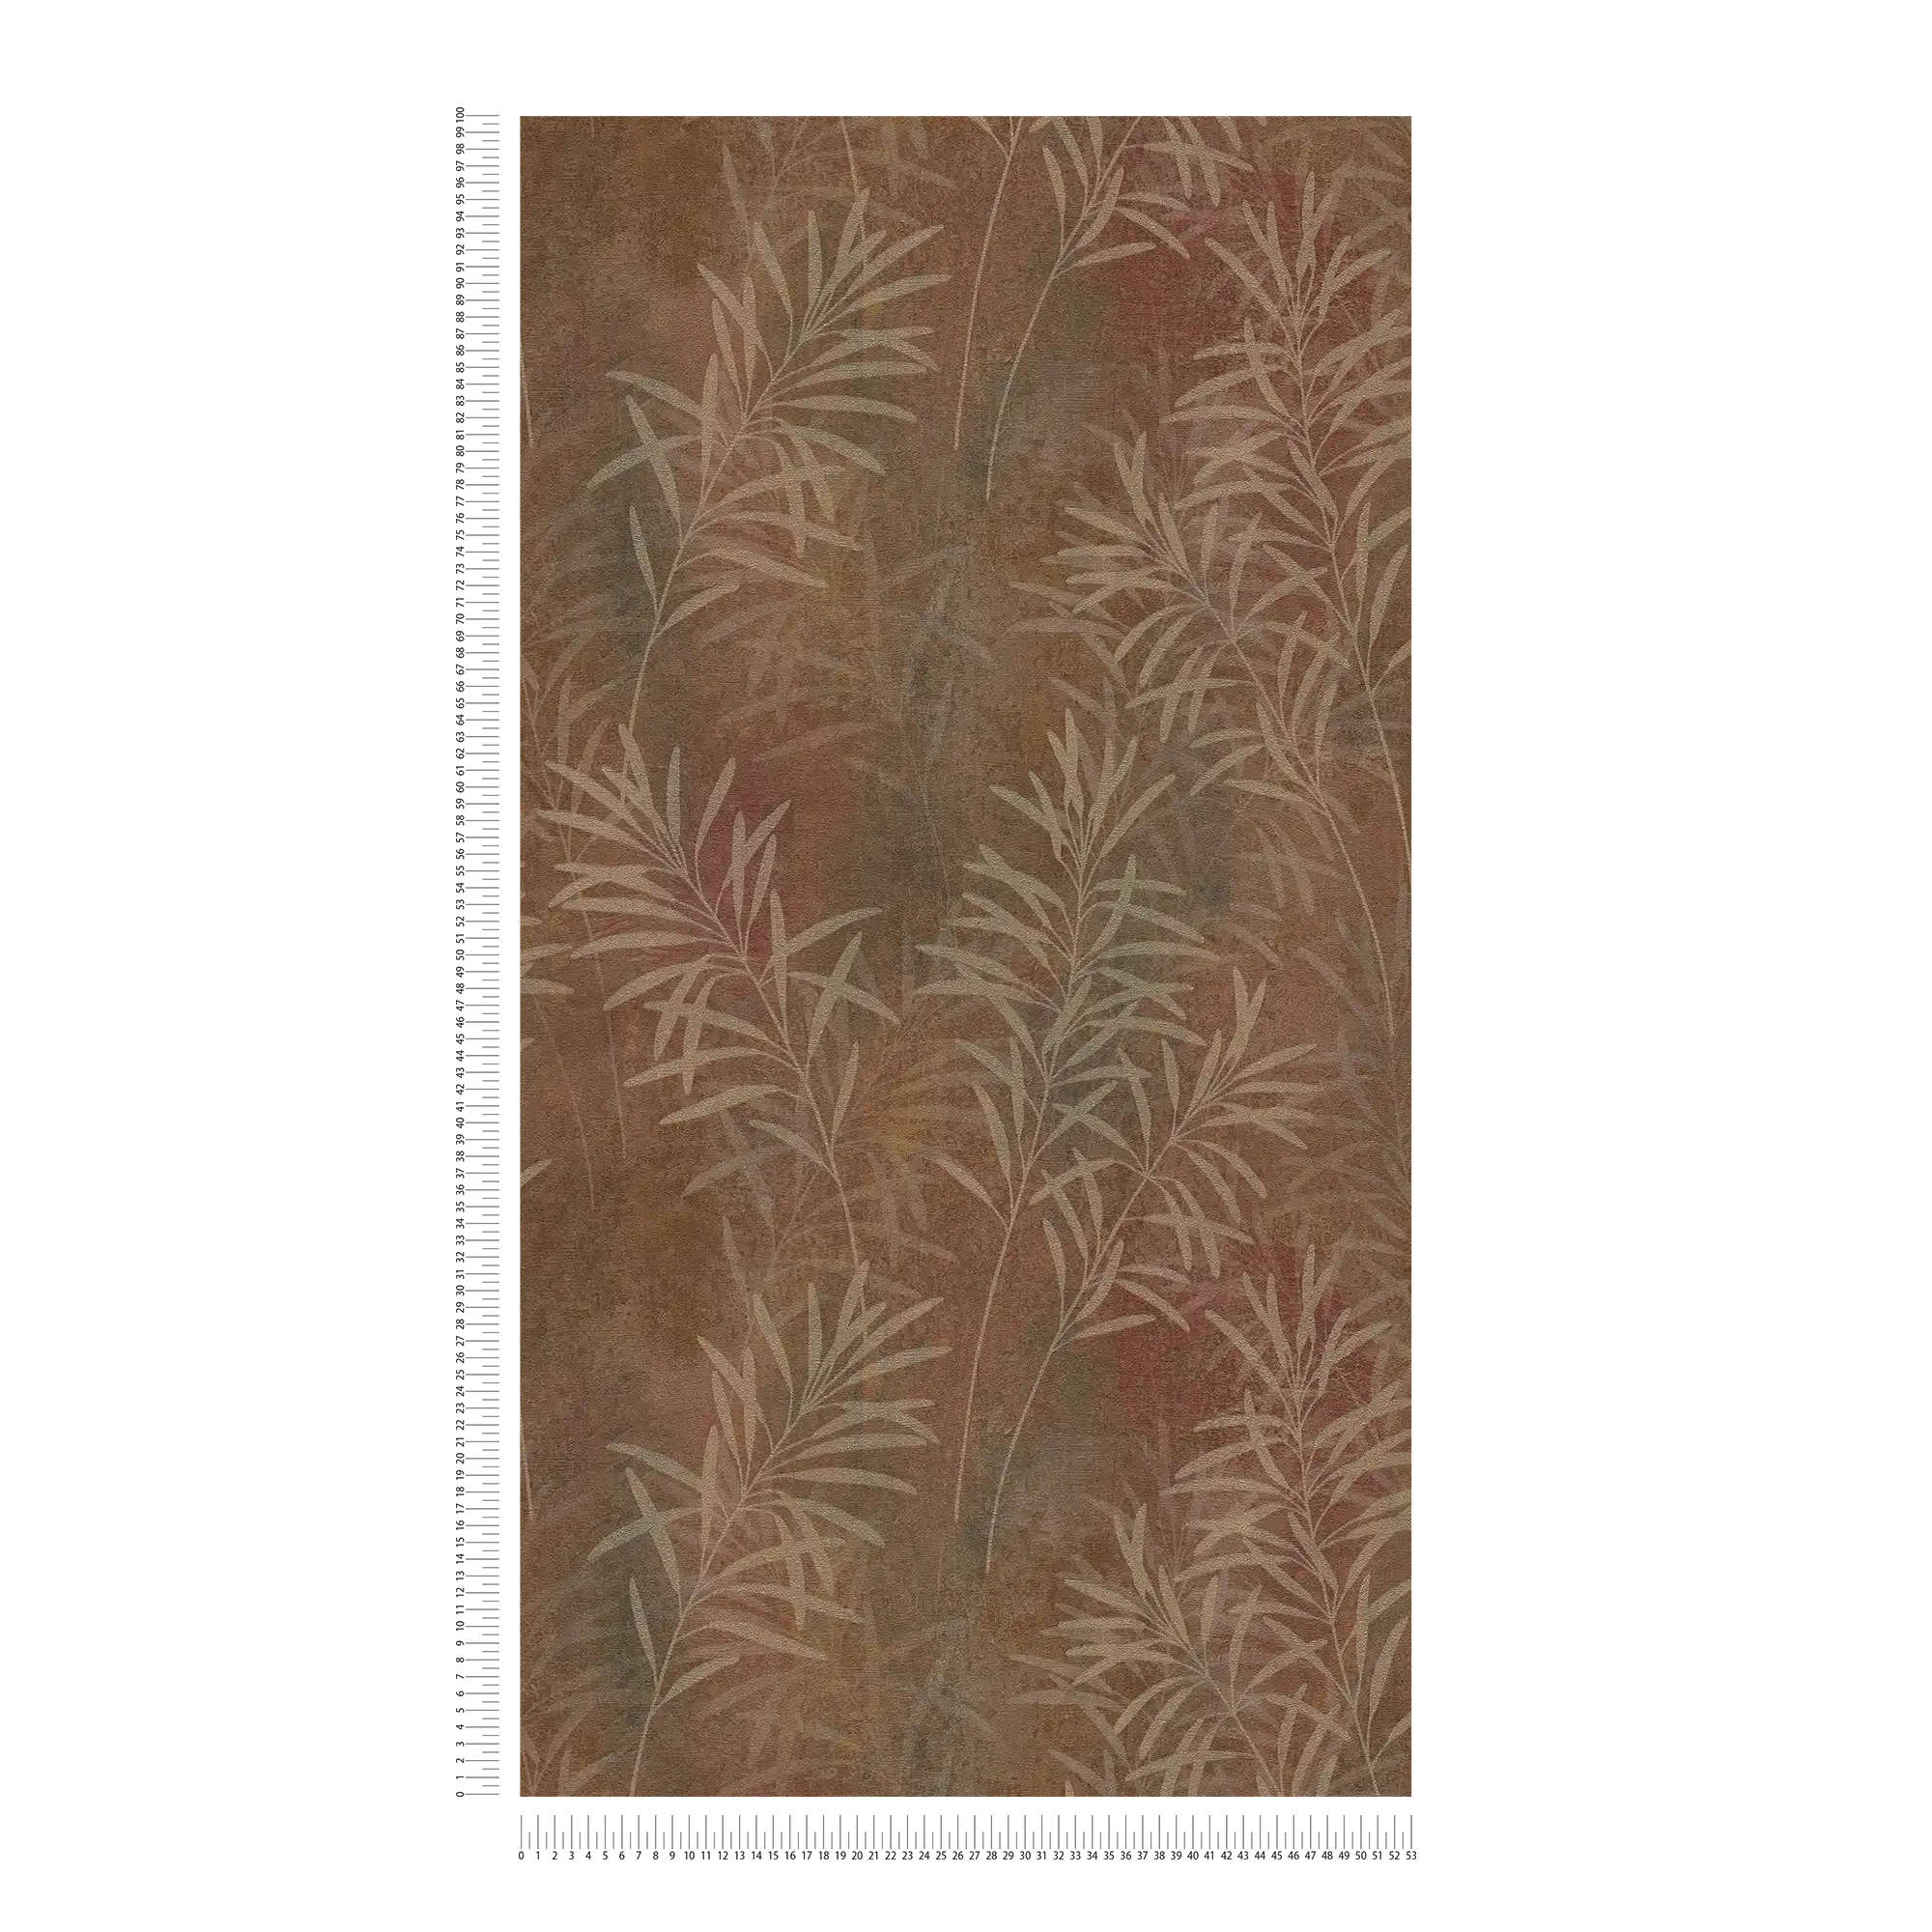             Carta da parati in tessuto non tessuto floreale con motivo a erba e struttura fine - marrone, beige, metallizzato
        